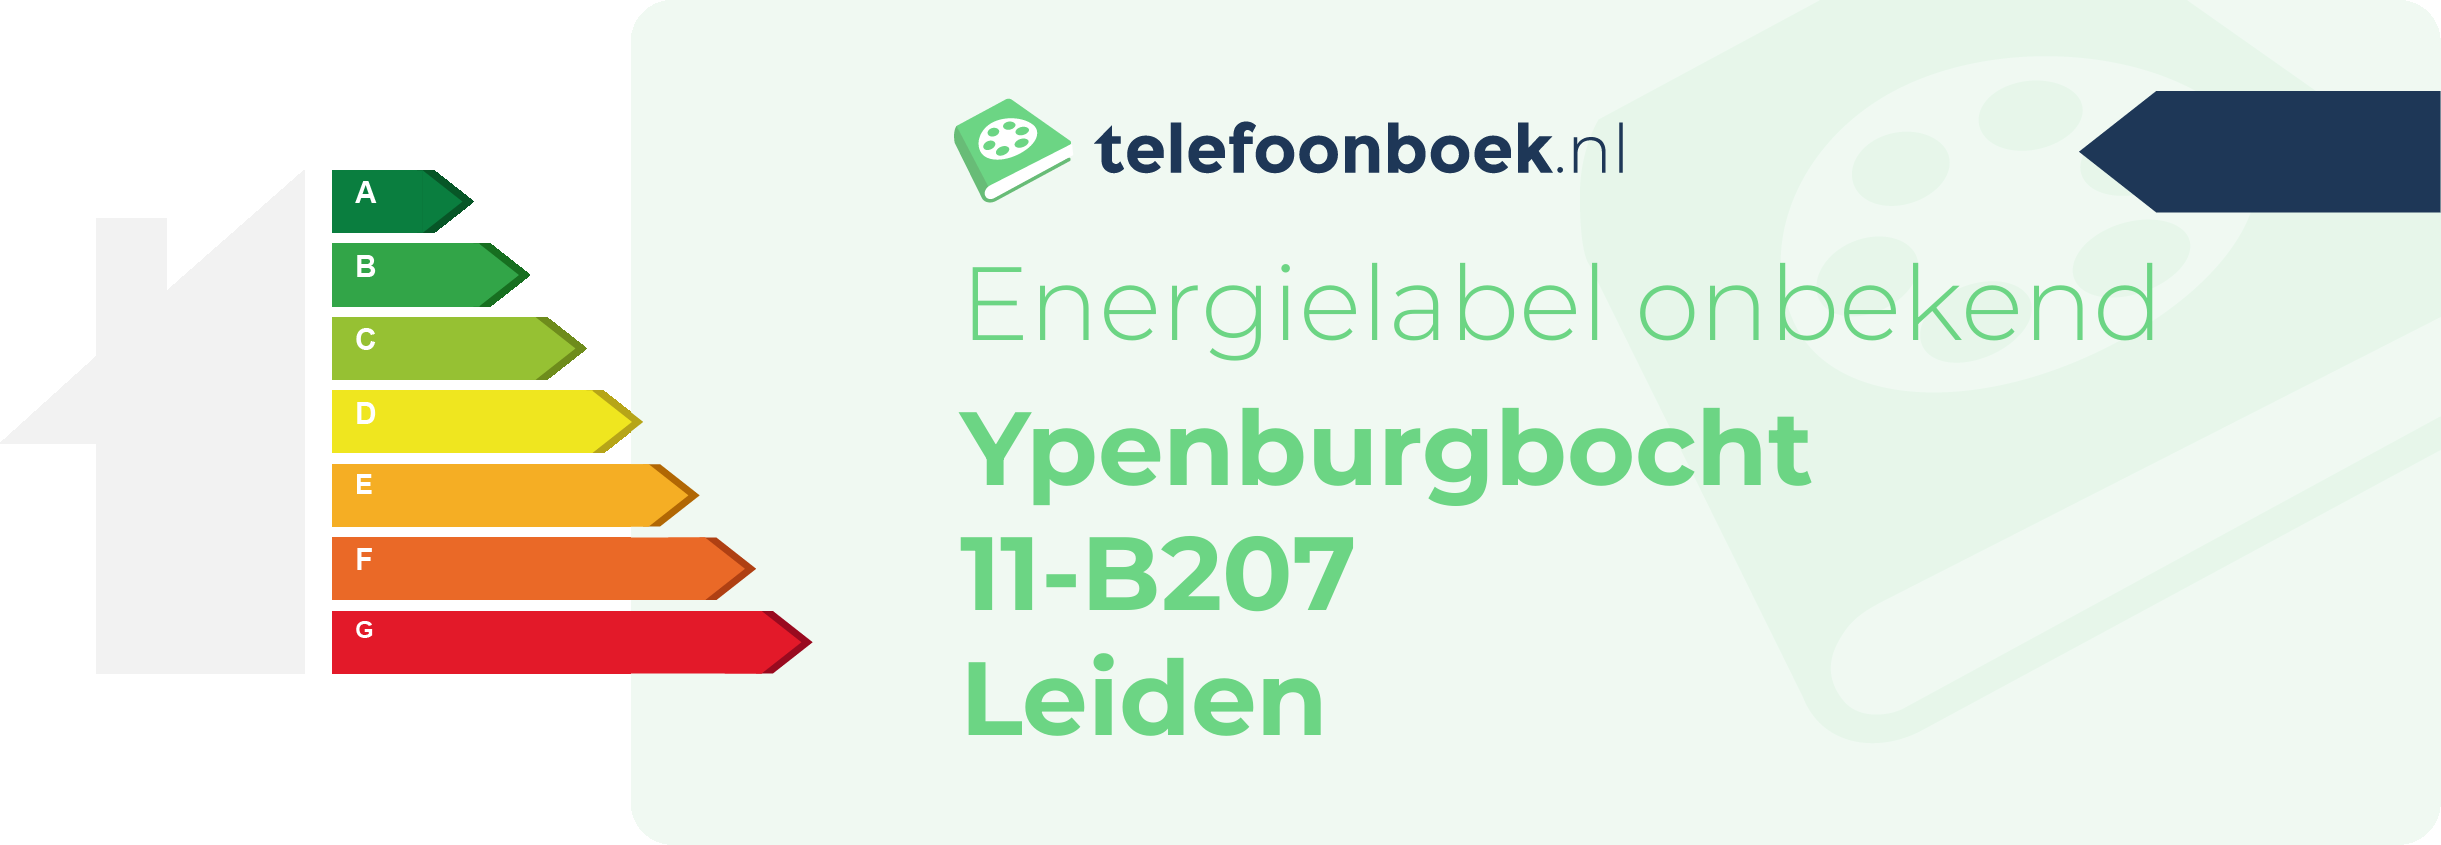 Energielabel Ypenburgbocht 11-B207 Leiden